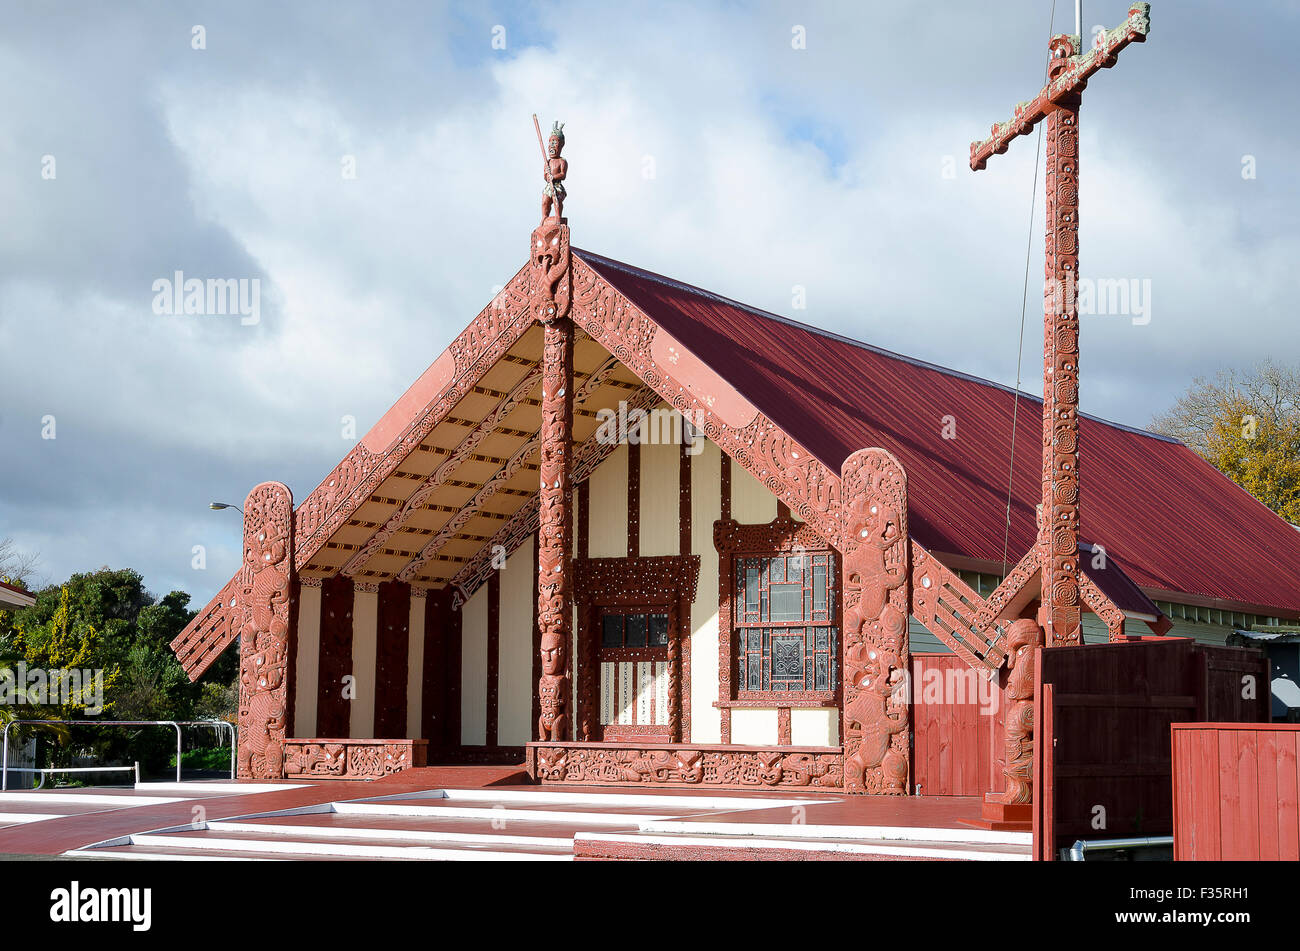 Maison de réunion maorie, Ohinemutu, Rotorua, île du Nord, Nouvelle-Zélande Banque D'Images